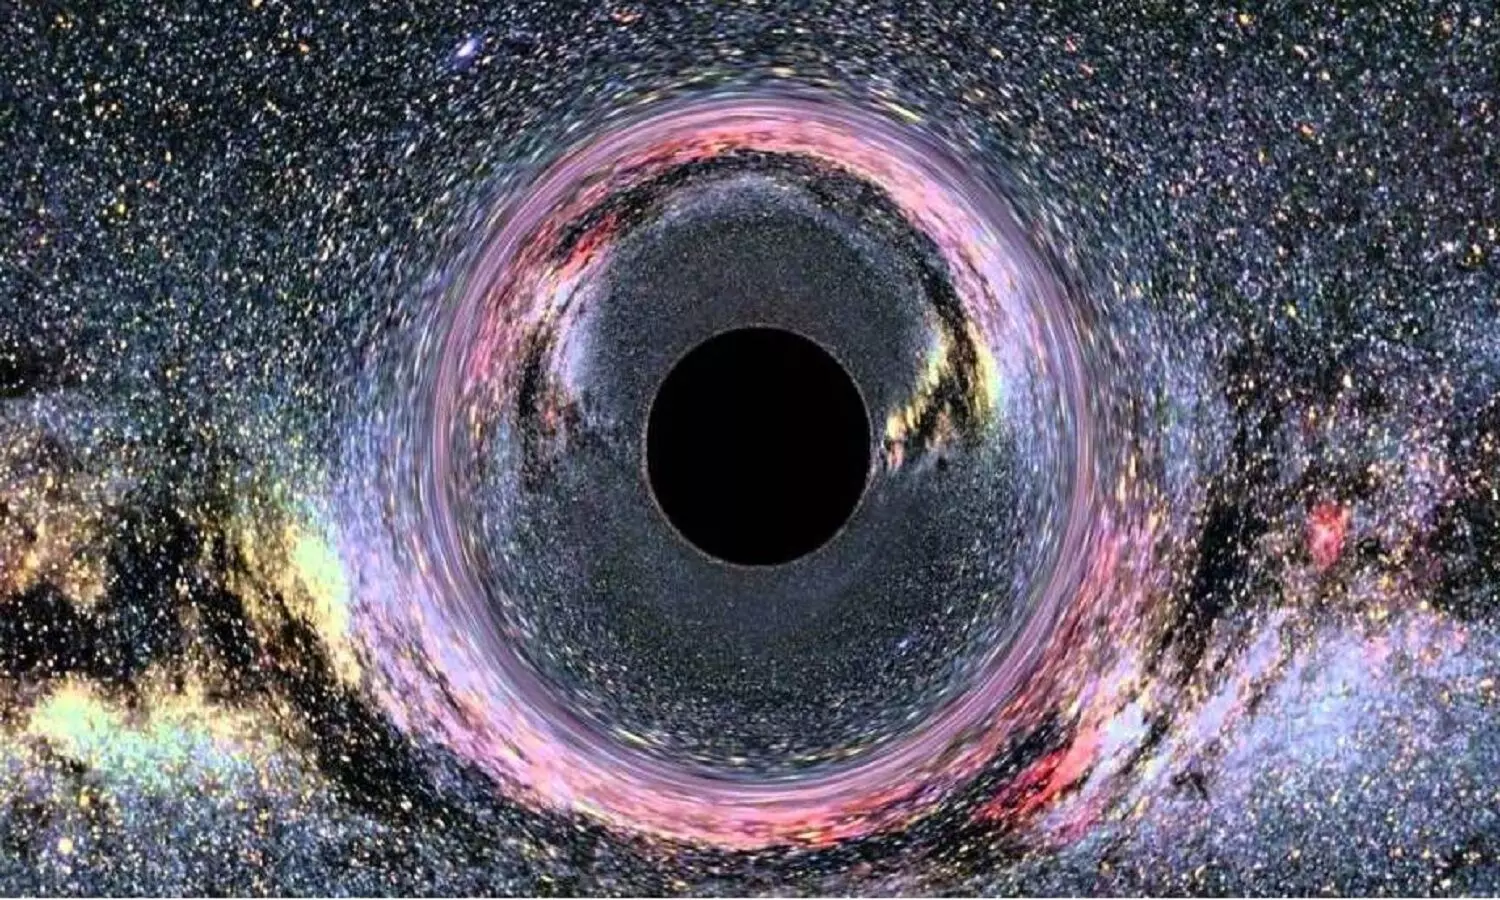 Black Hole: वैज्ञानिकों ने पहली बार ब्लैक होल की धड़कनों को रिकॉर्ड किया, बड़े रहस्य को सुलझाने का काम हो रहा